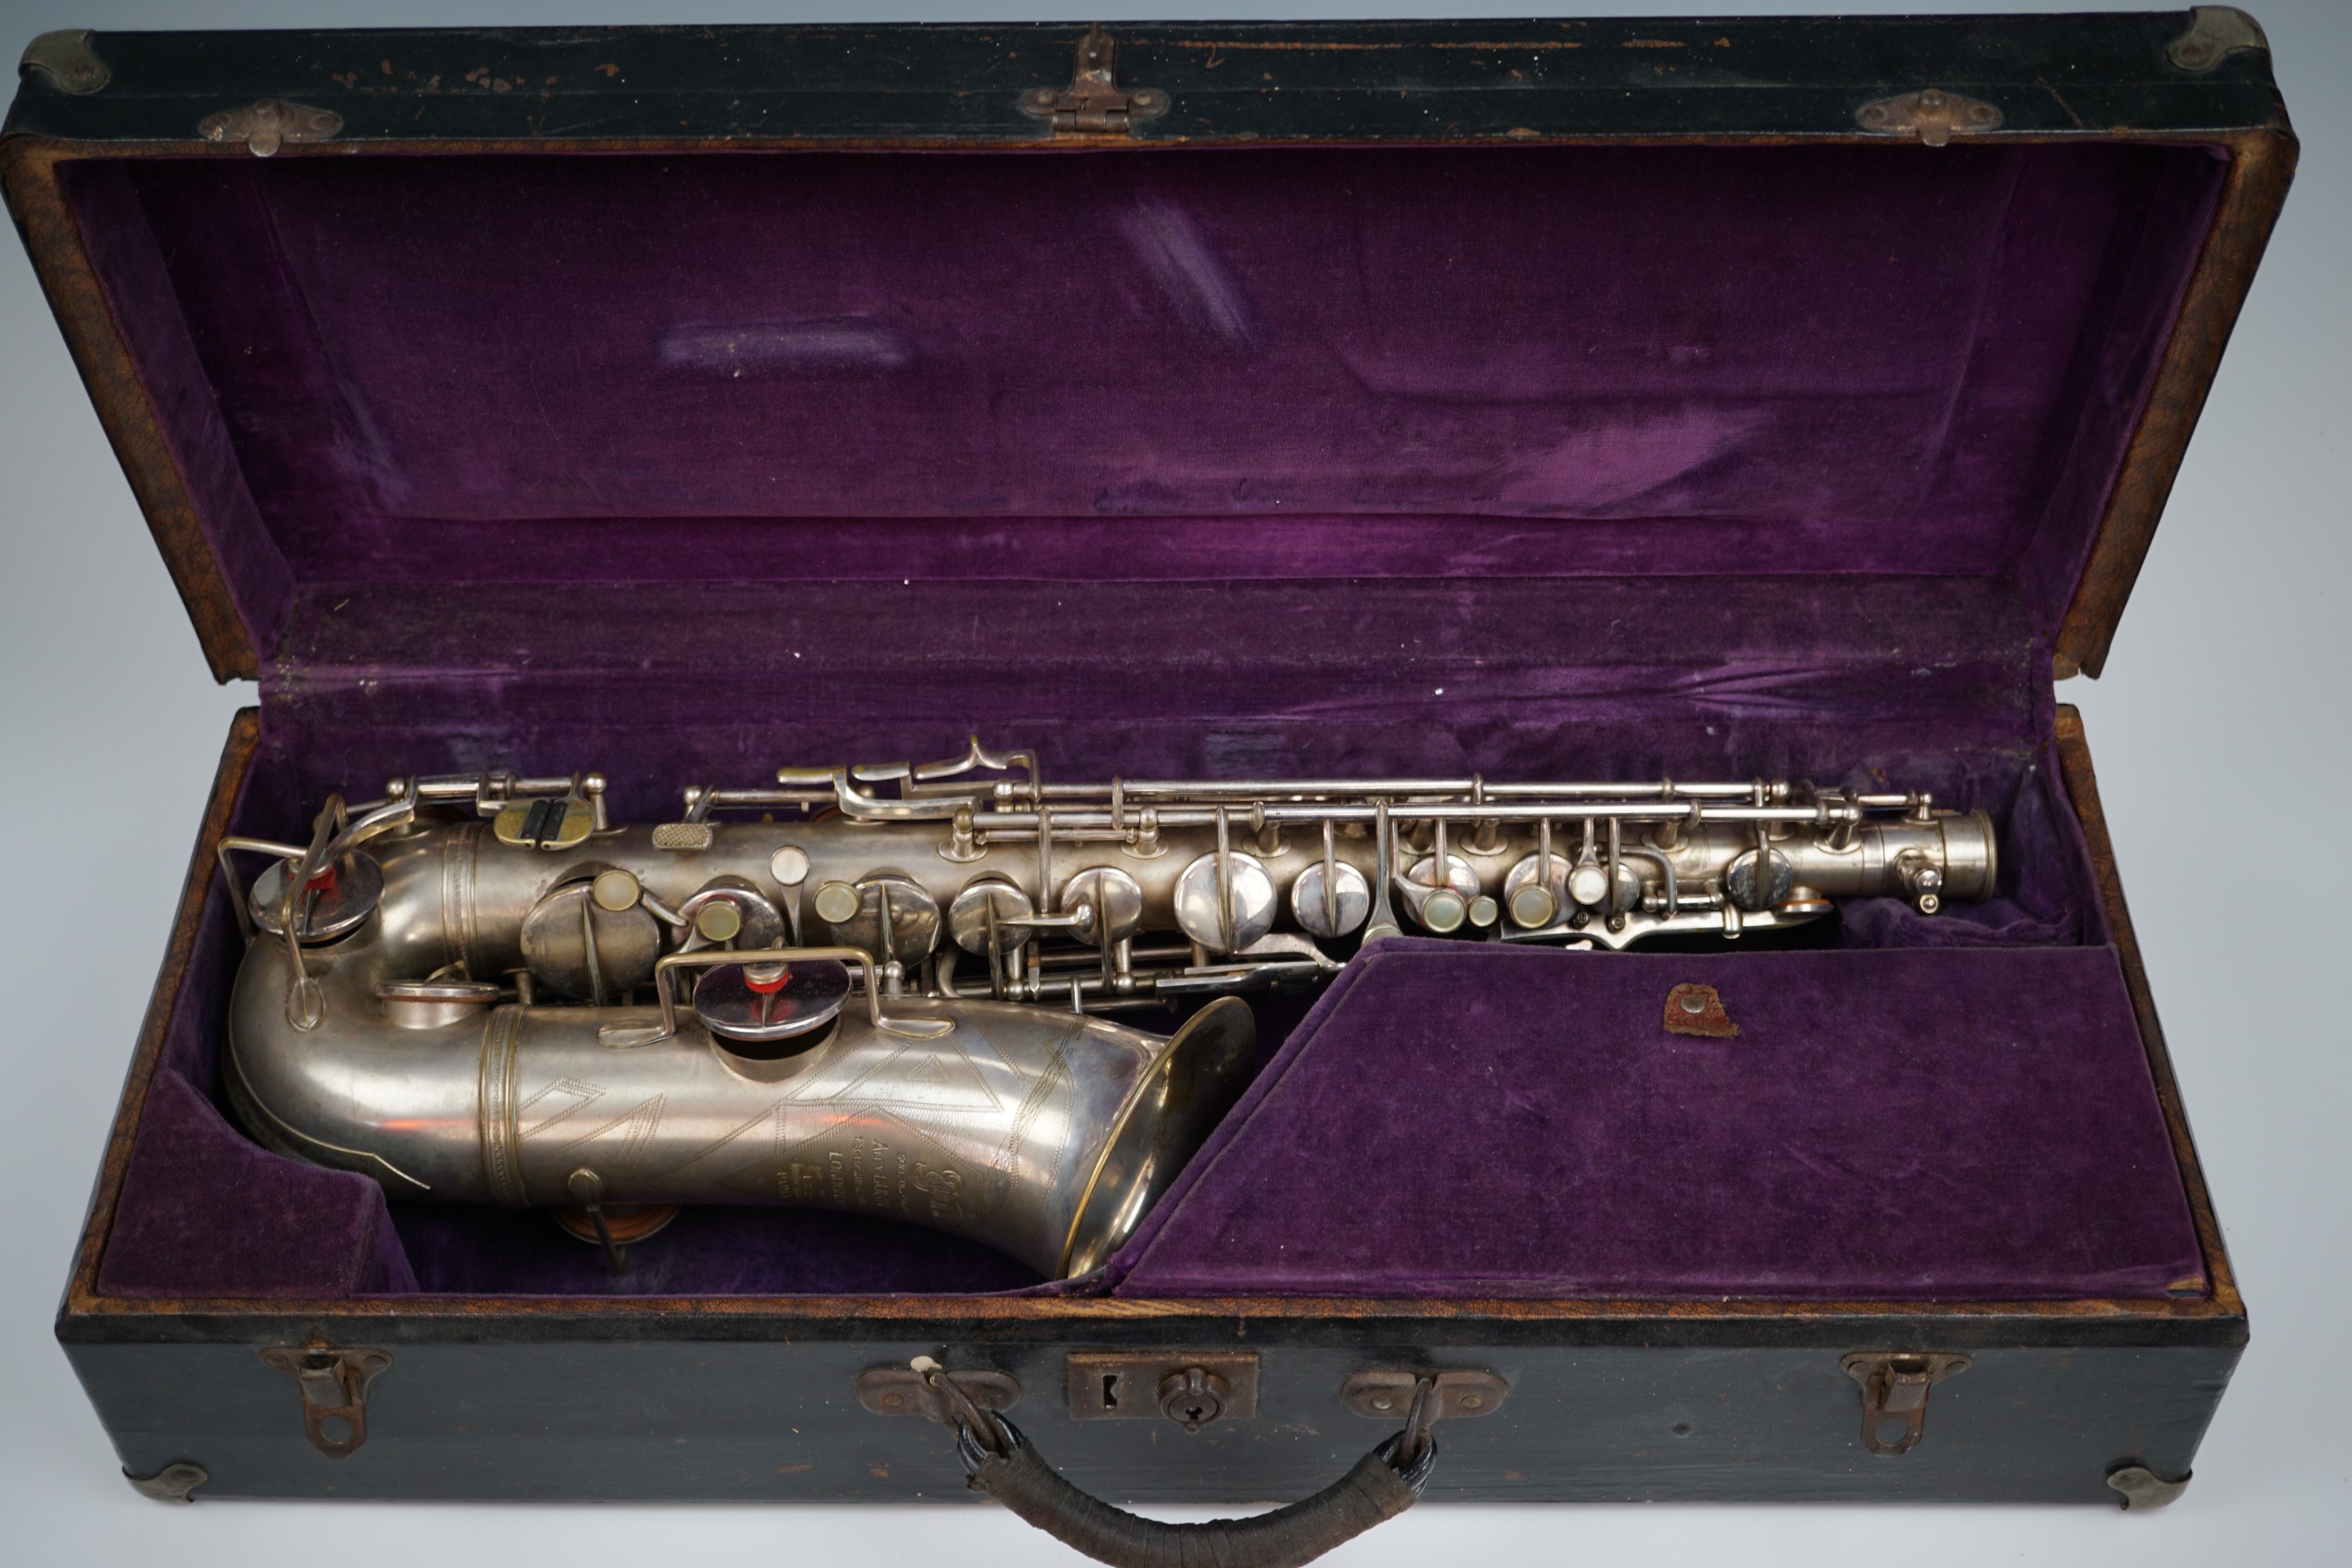 A vintage Alex Smith Sioma saxophone, circa 1930s